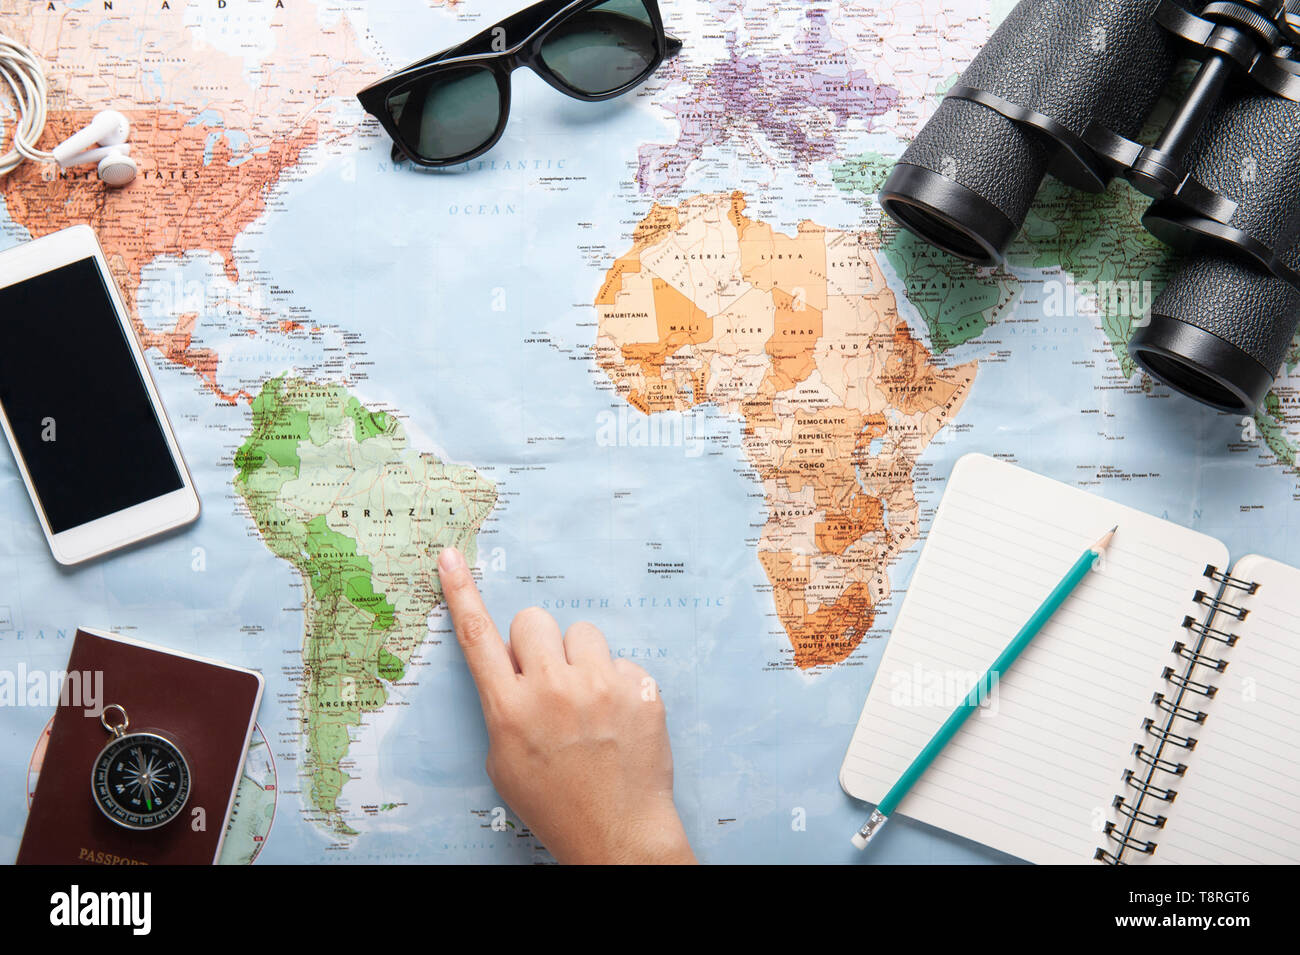 Vue de dessus de la carte du monde, des lunettes, des jumelles et de  passeport avec textos l'espace, voyager concept, planifier un voyage,  carnet de voyage, une part à point e Photo